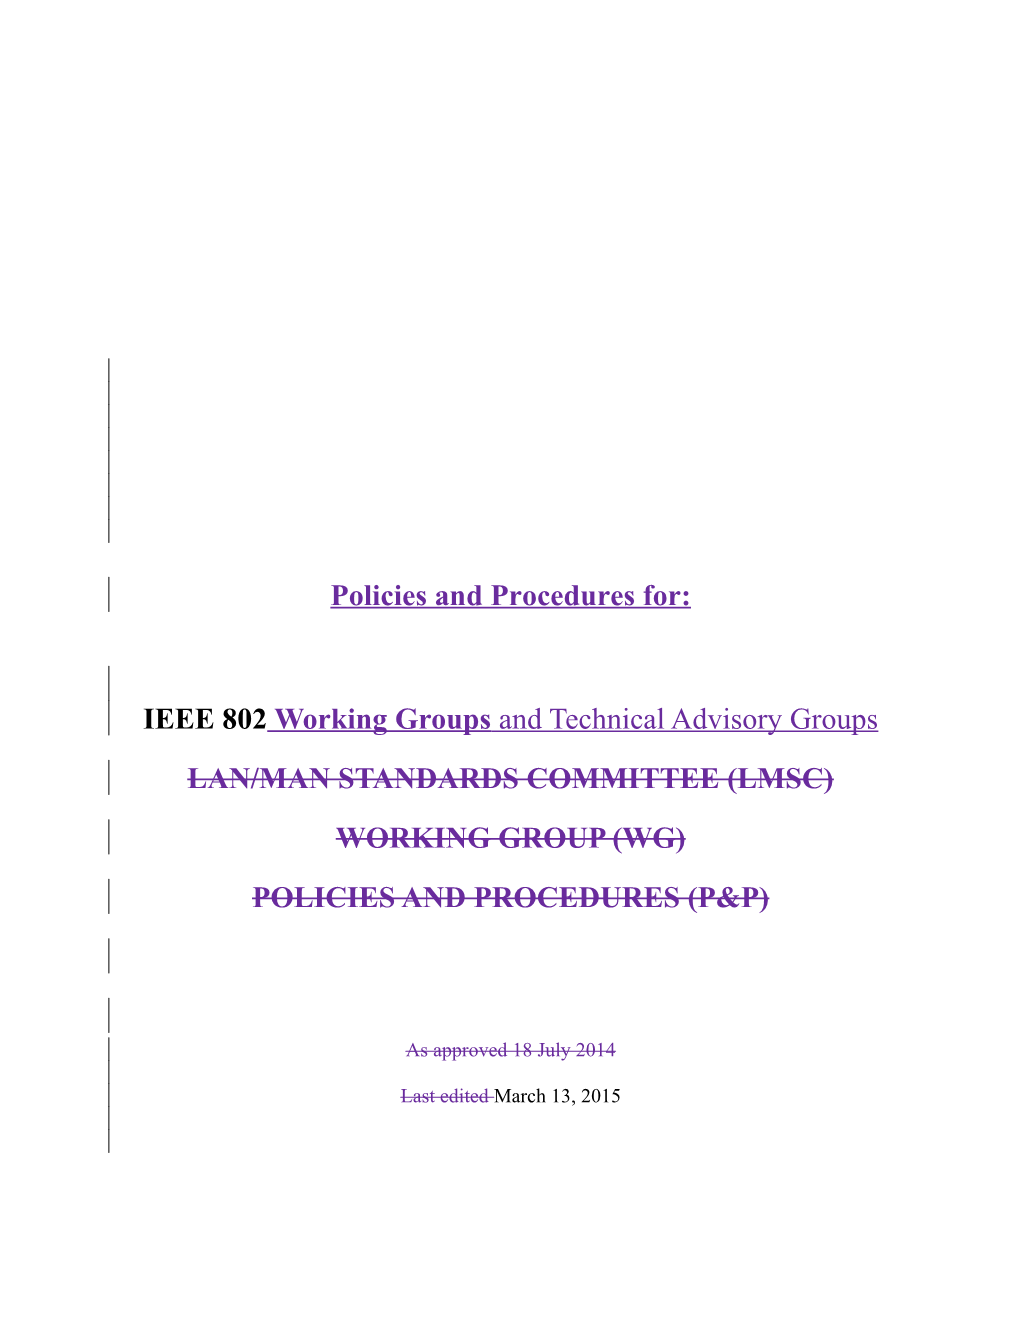 IEEE 802 LMSC Working Group Policies and Procedures